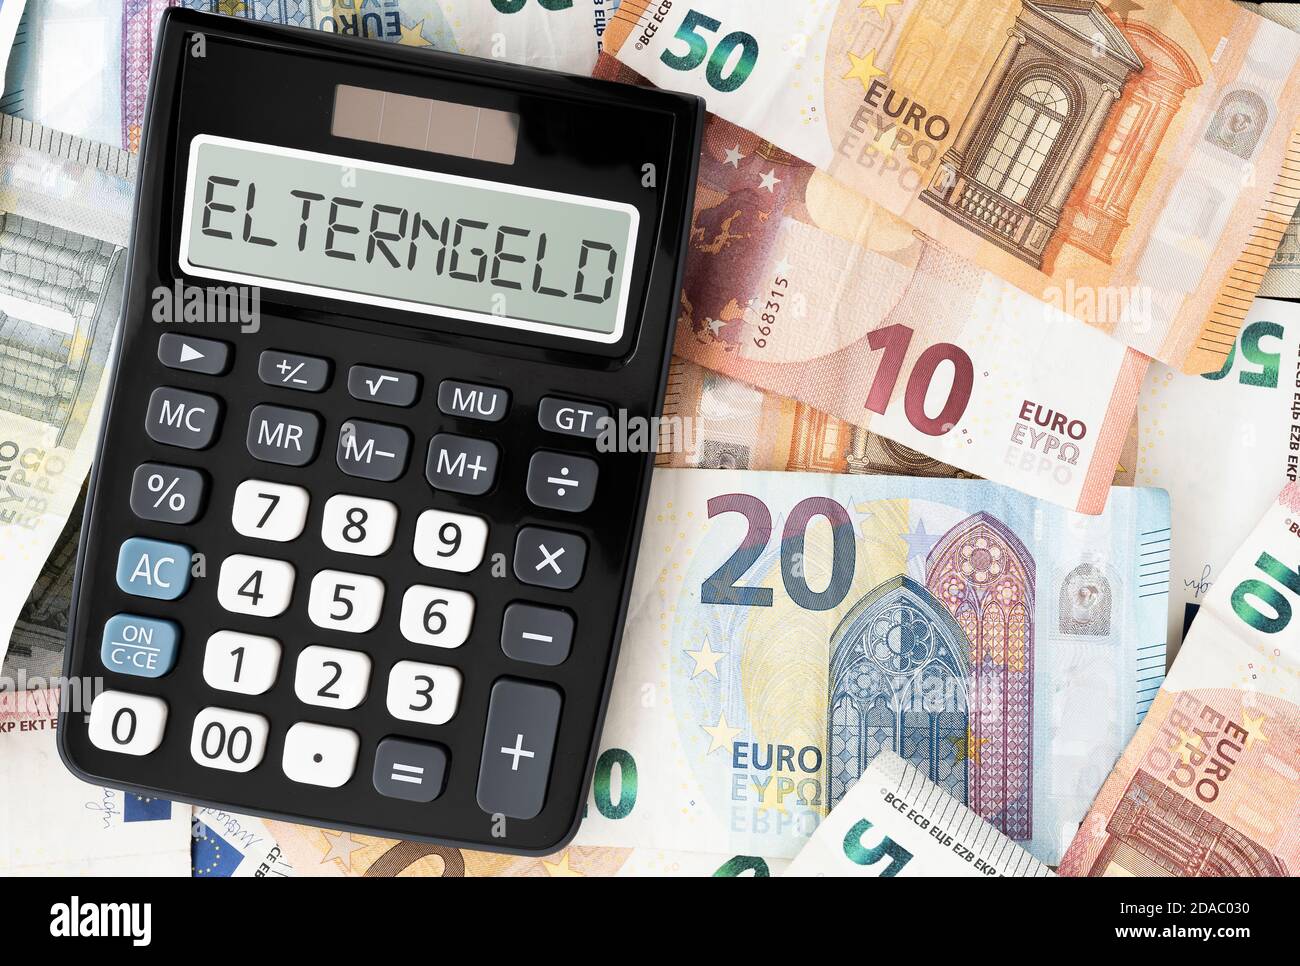 Wort ELTERNGELD, Deutsch für Elterngeld, auf dem Display des Taschenrechners gegen Euro-Banknoten Stockfoto